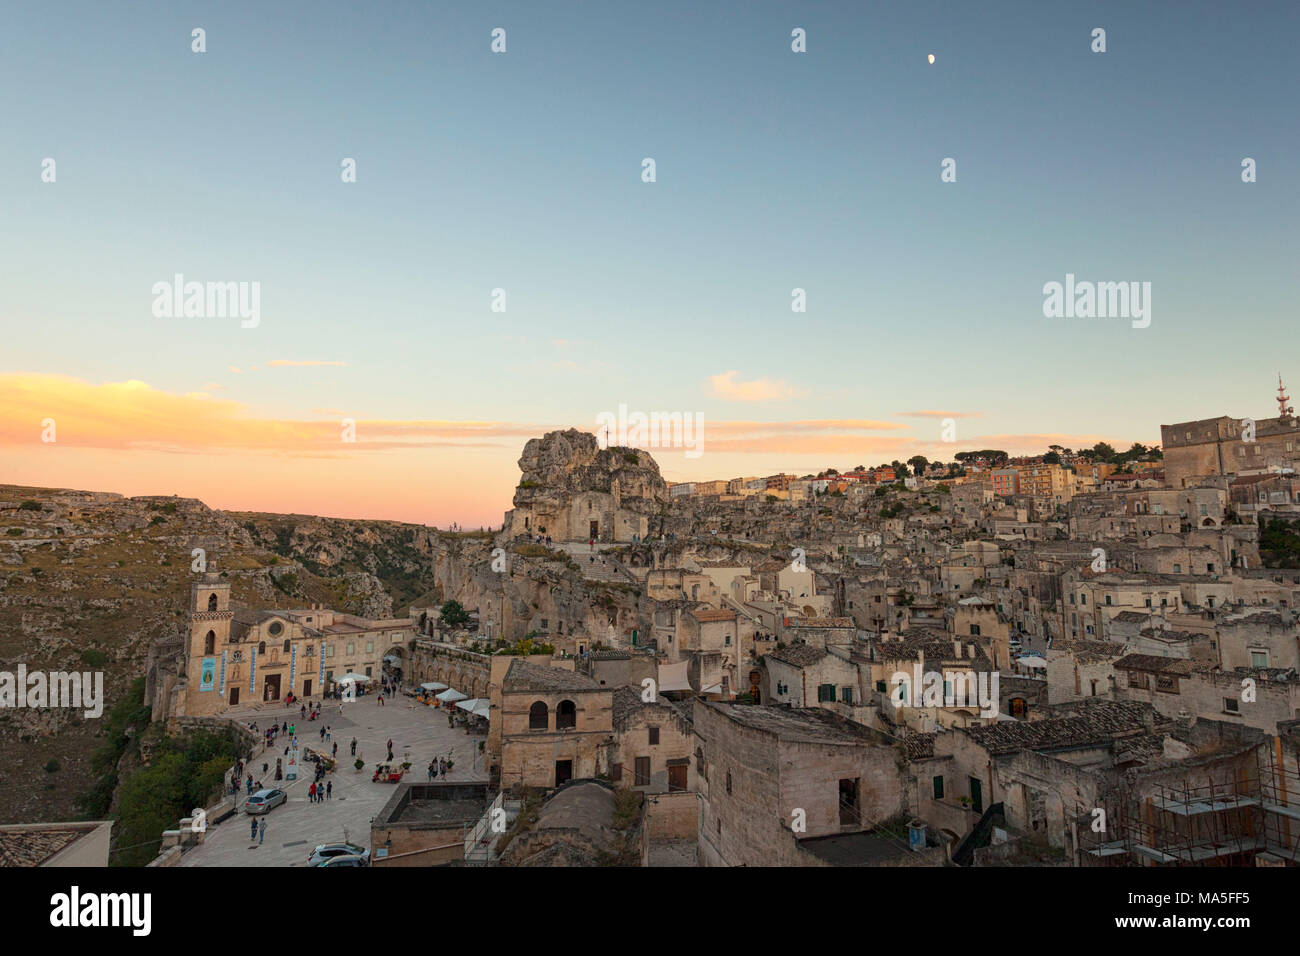 Vue sur la vieille ville et le centre historique appelé Sassi perché sur les rochers au-dessus de la colline, Matera, Basilicate, Italie, Europe Banque D'Images